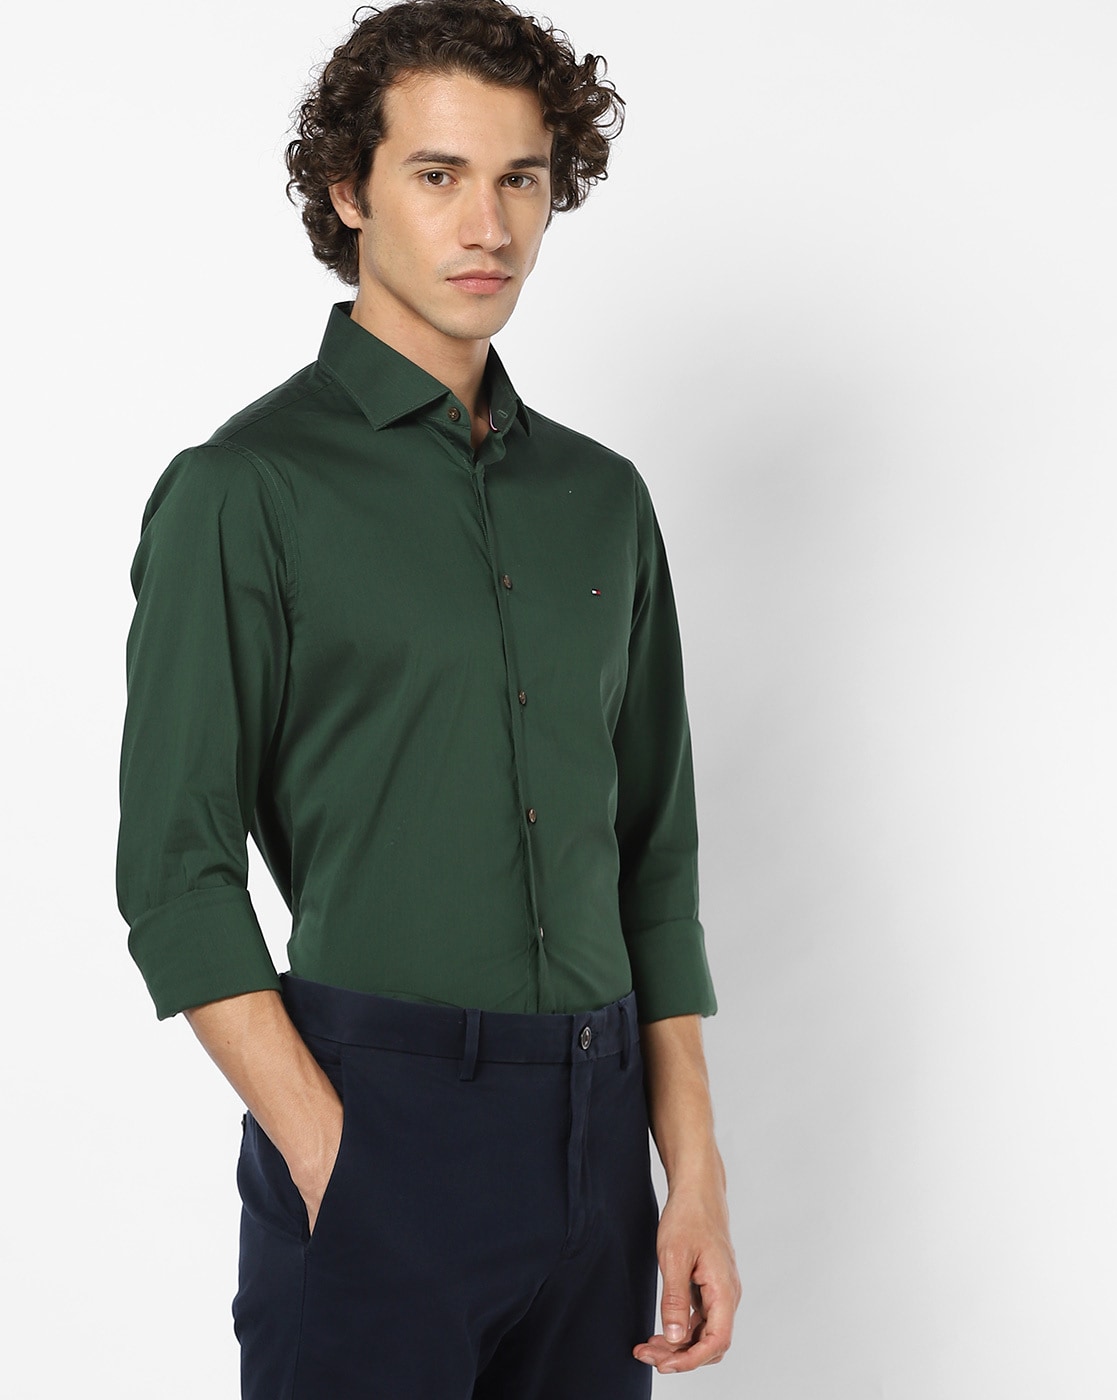 olive green tommy hilfiger shirt